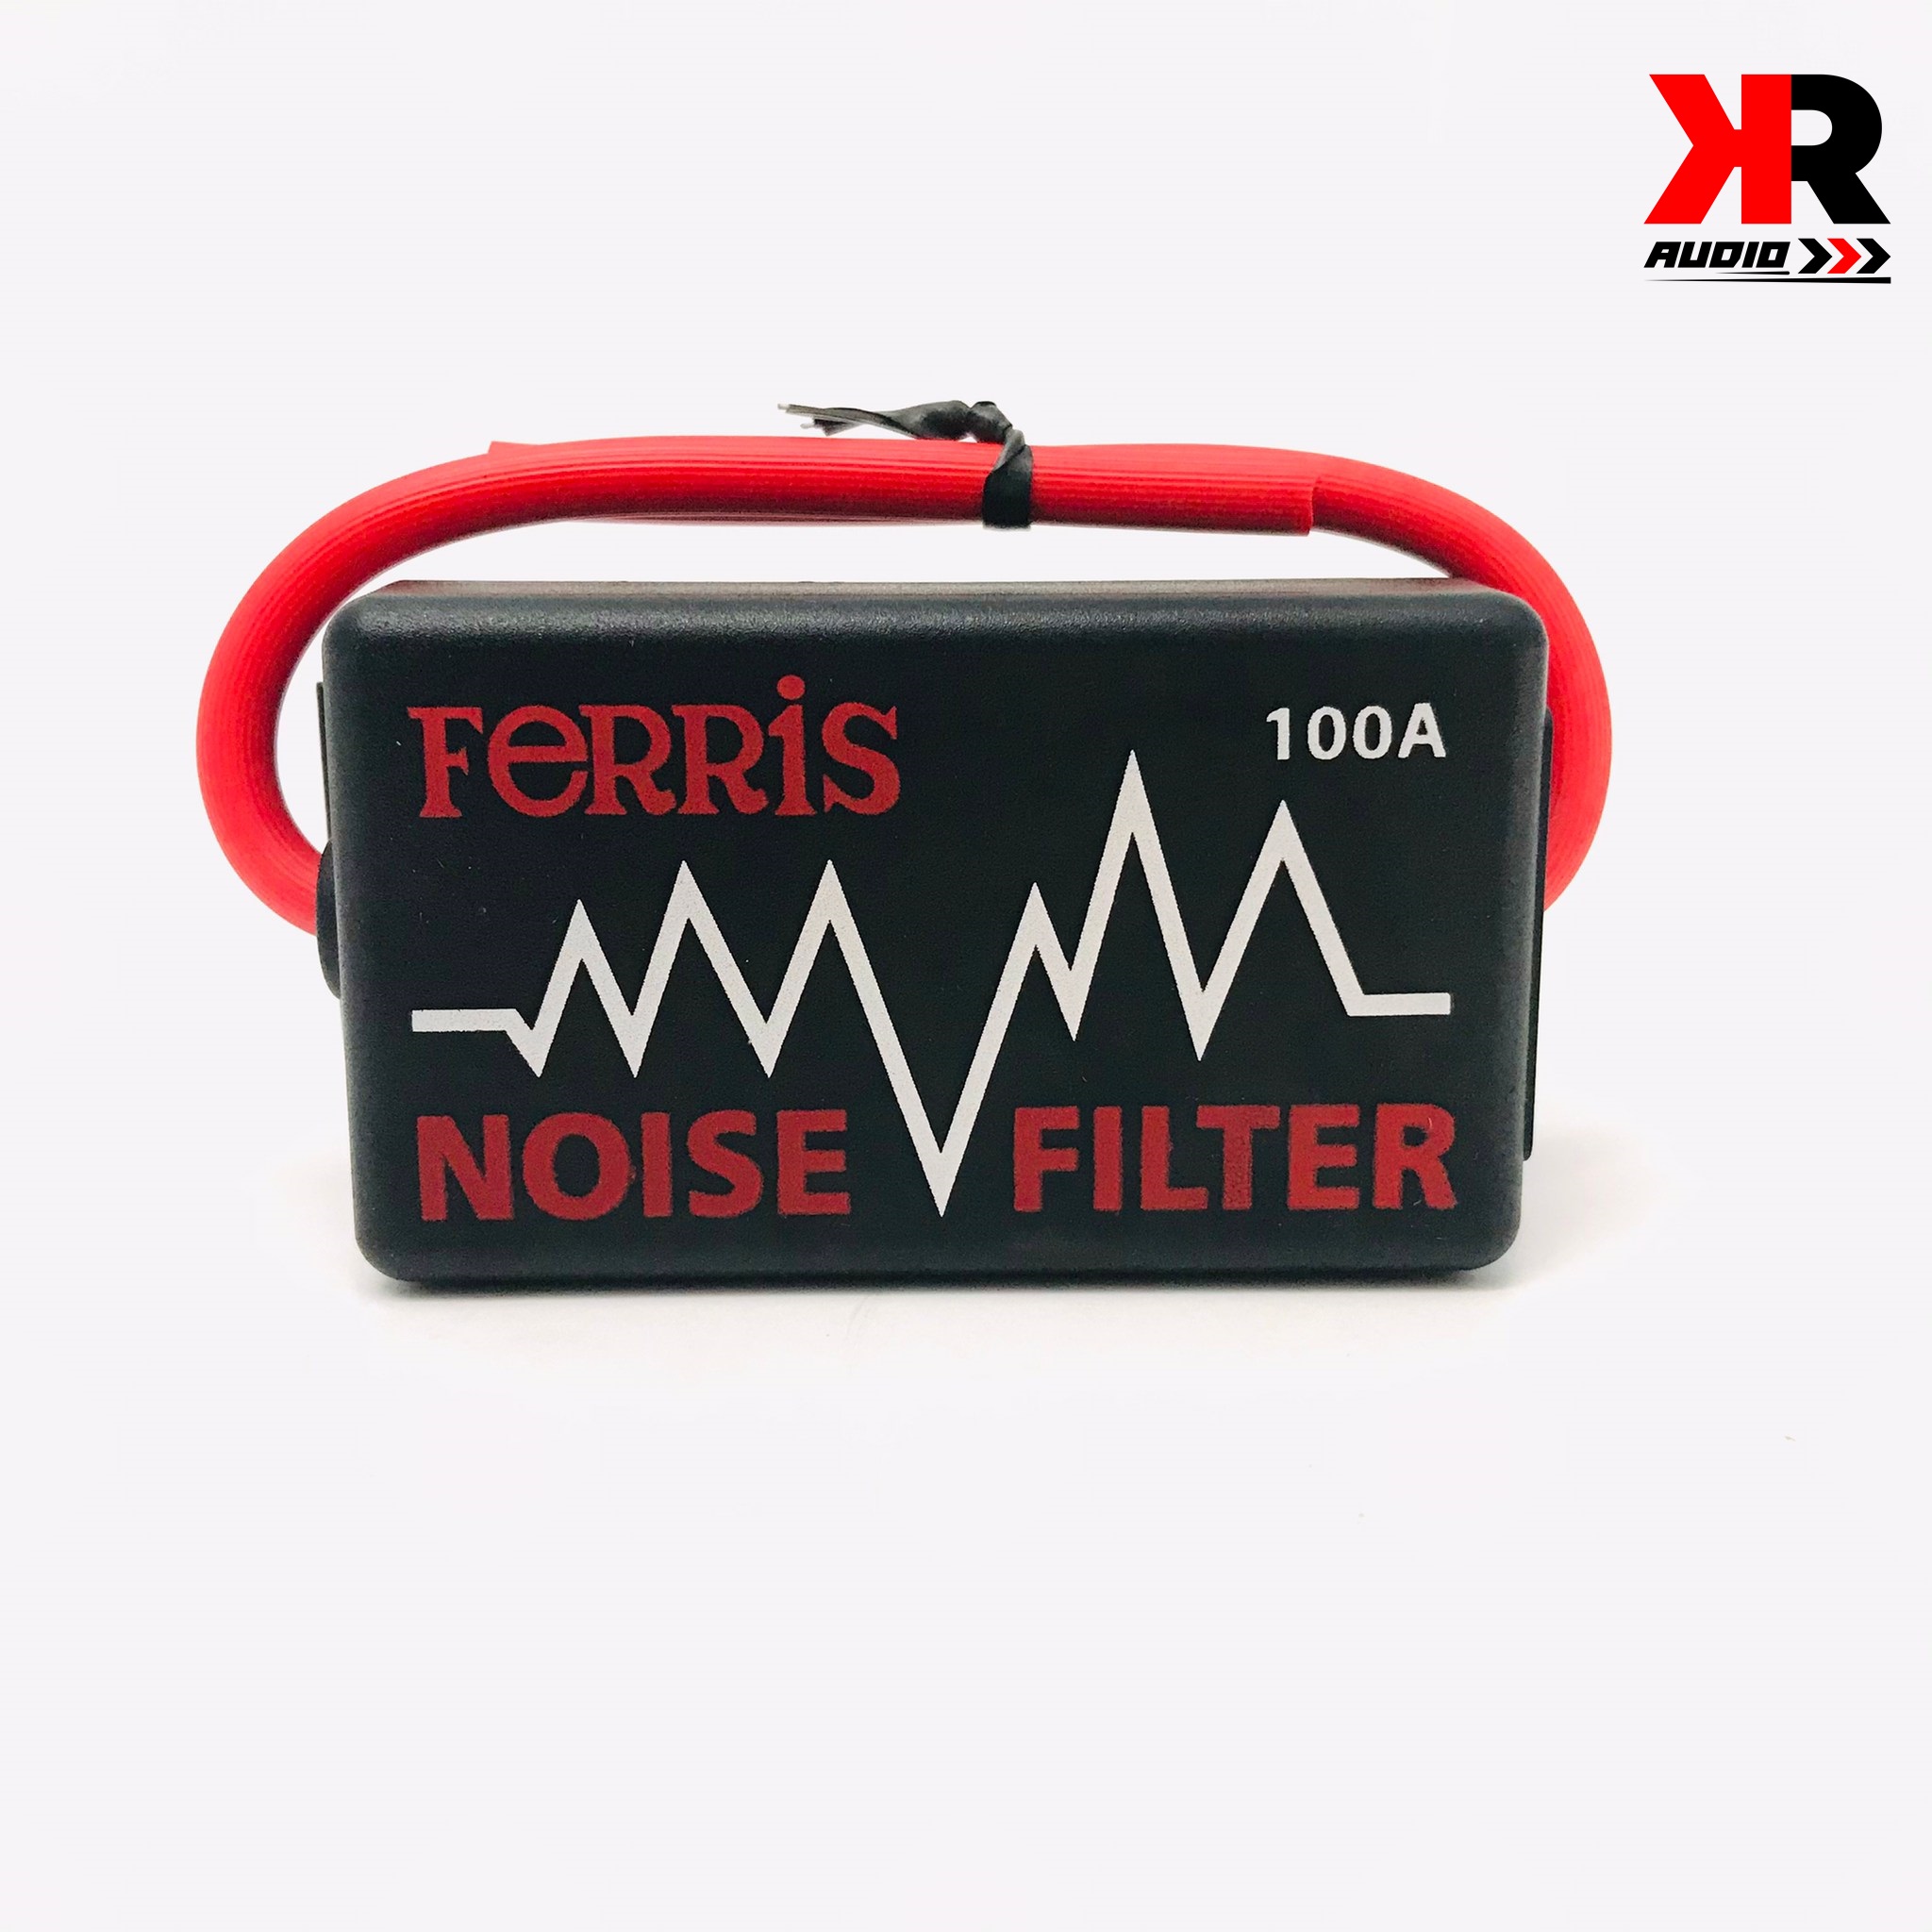 กันกวน กันหวีด เครื่องเสียงติดรถยนต์ ยี่ห้อ FERRIS รุ่น 100A สำหรับเครื่องเสียงที่มีเสียงกวนจากกระแสไฟ NOISE FILTER